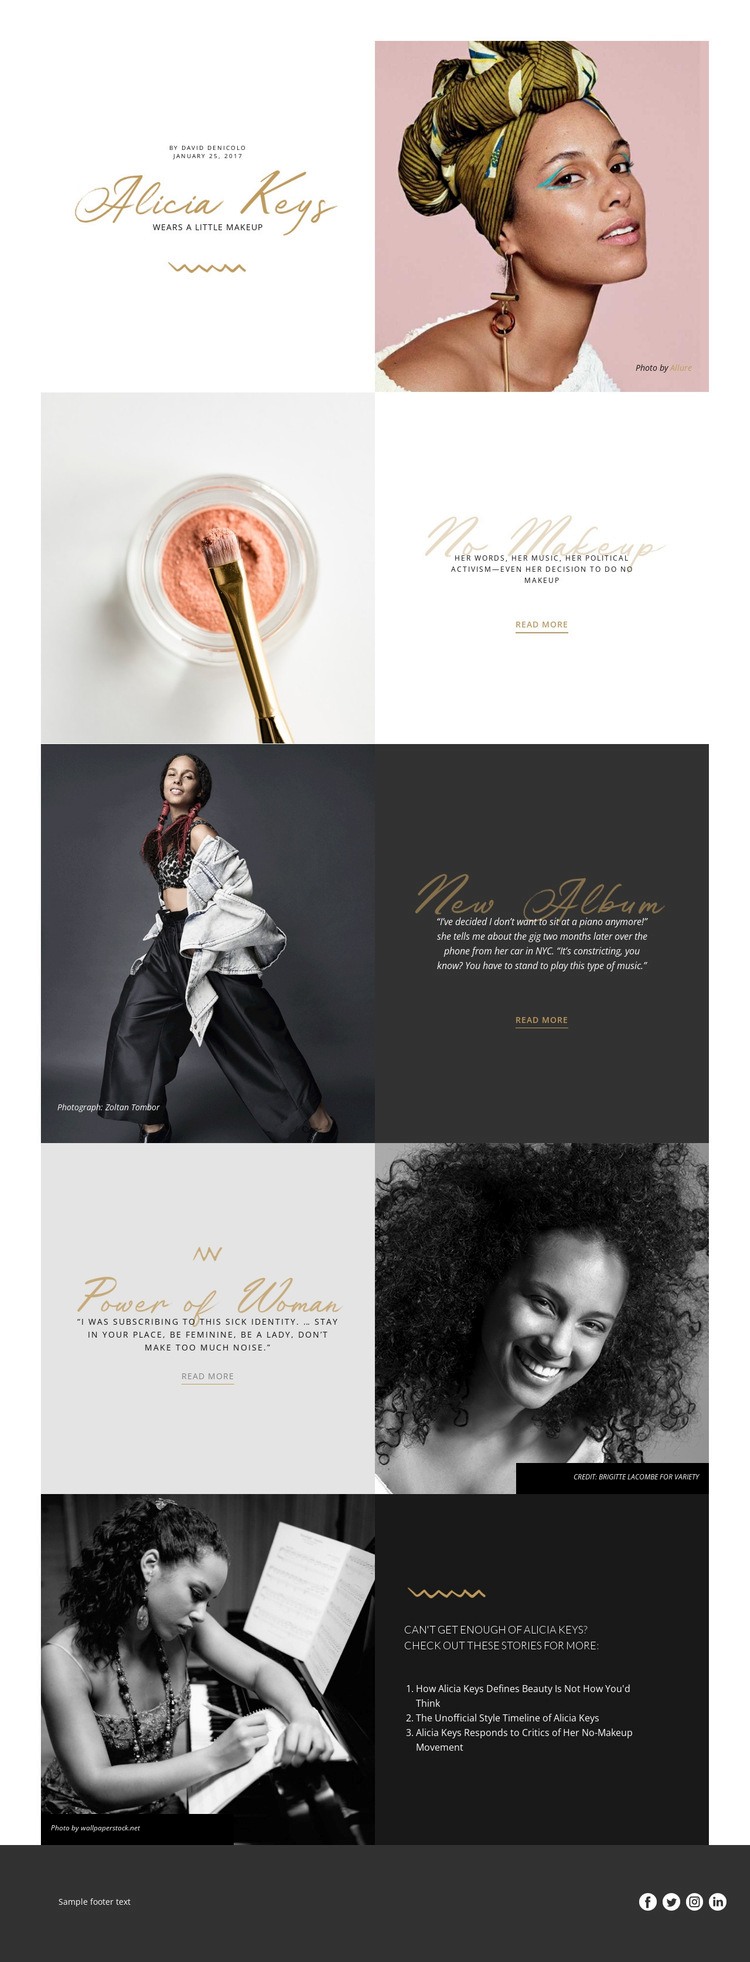 Alicia Keys Html Weboldal készítő